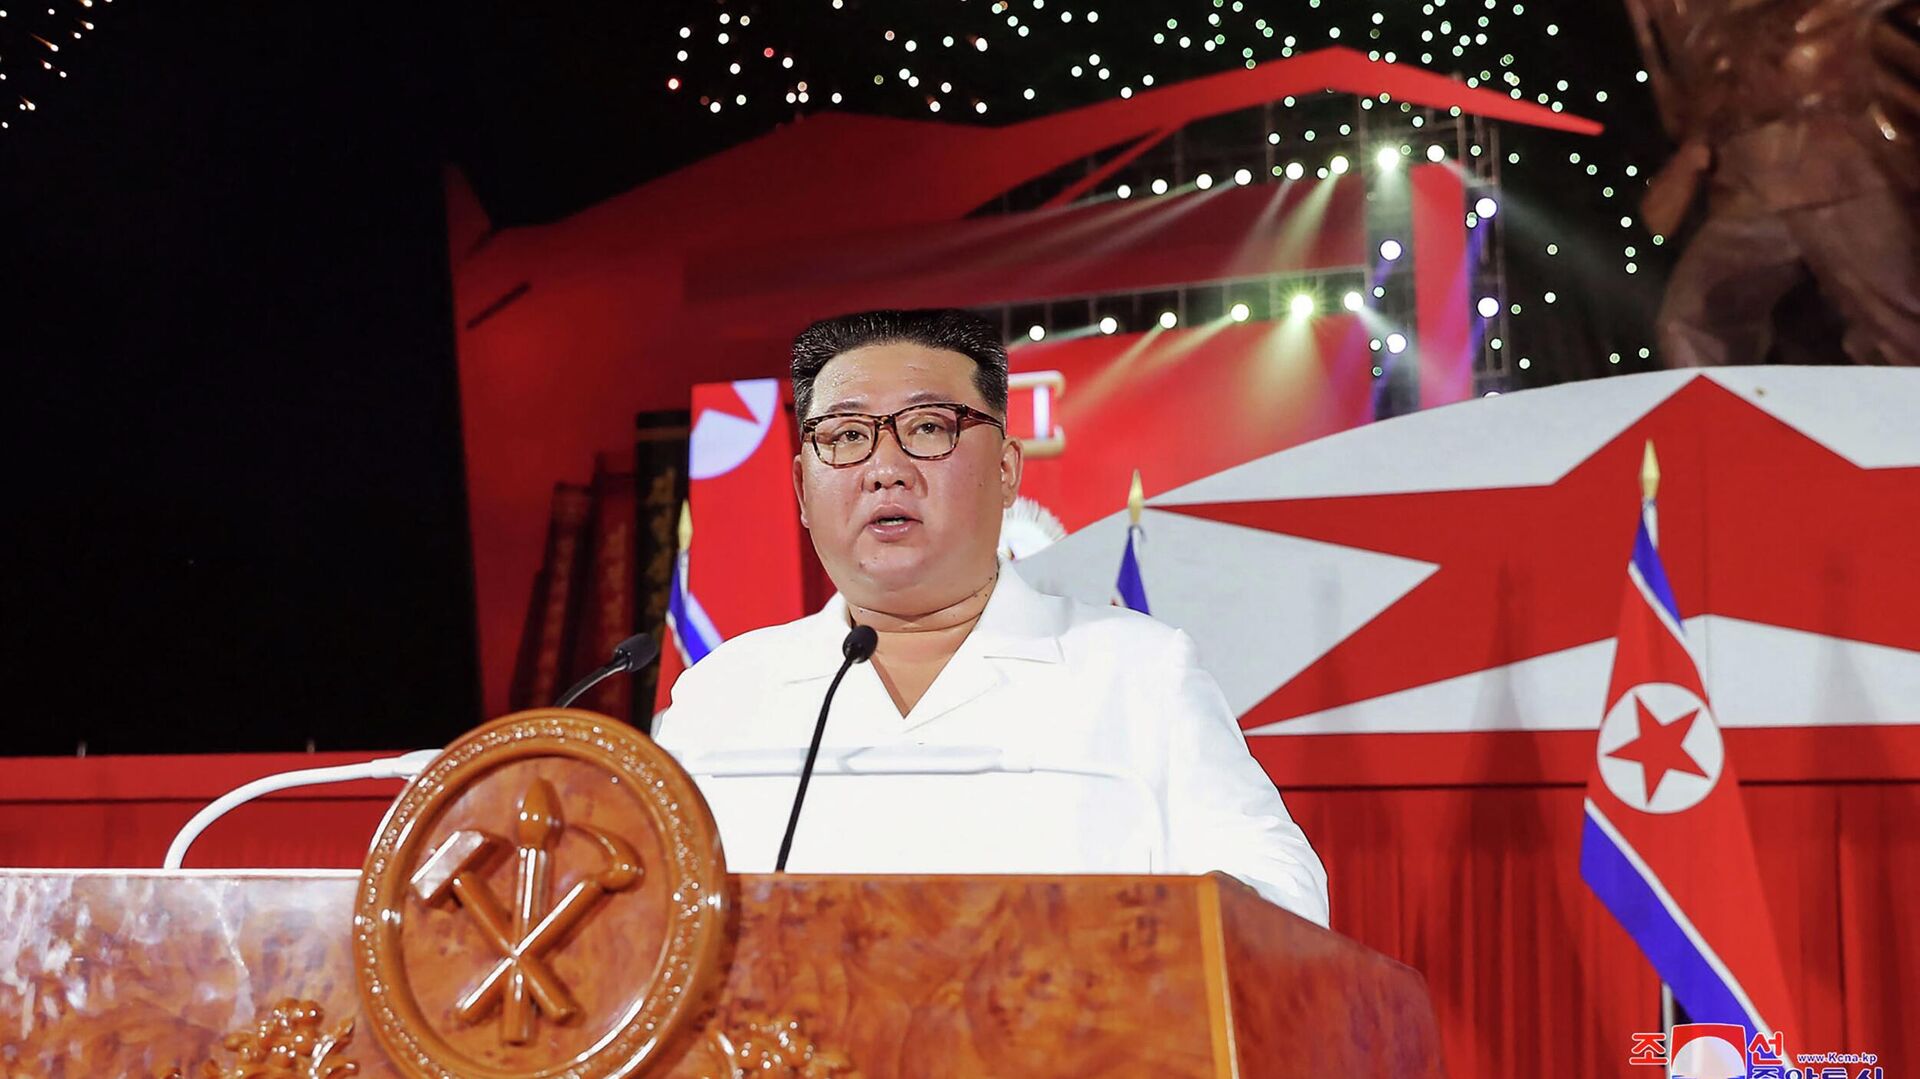 Лидер КНДР Ким Чен Ын выступает с речью во время празднования 69й годовщины победы в Корейской войне в Пхеньяне - Sputnik Азербайджан, 1920, 07.10.2022